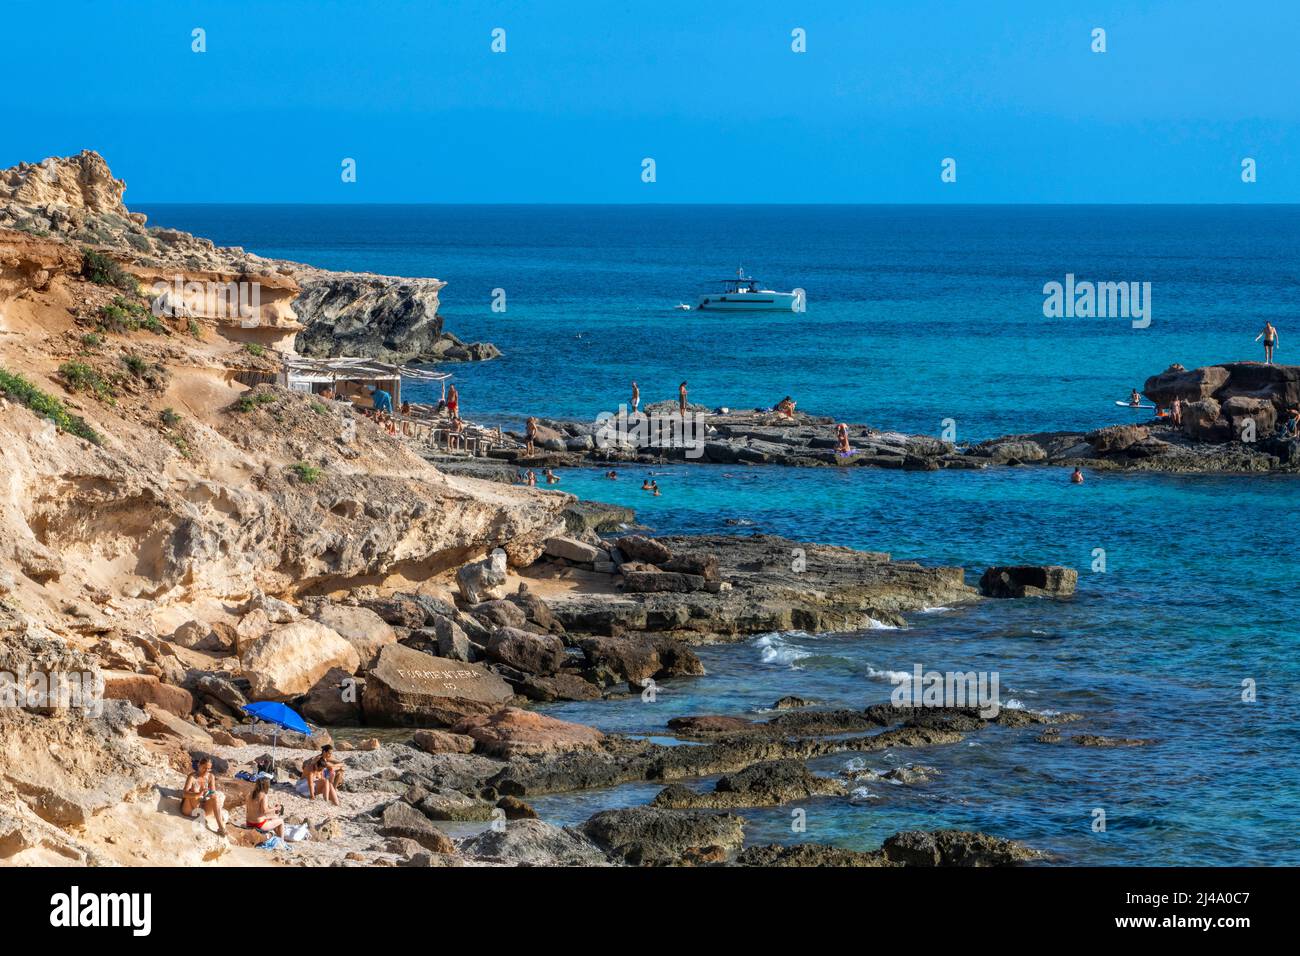 Playa de Es Caló d'es mort cala, visitantes veraniegos tumbados en una cala bordeada de acantilados rojos y rocas en un hueco de aguas turquesas, isla de Formentera Baleares Foto de stock